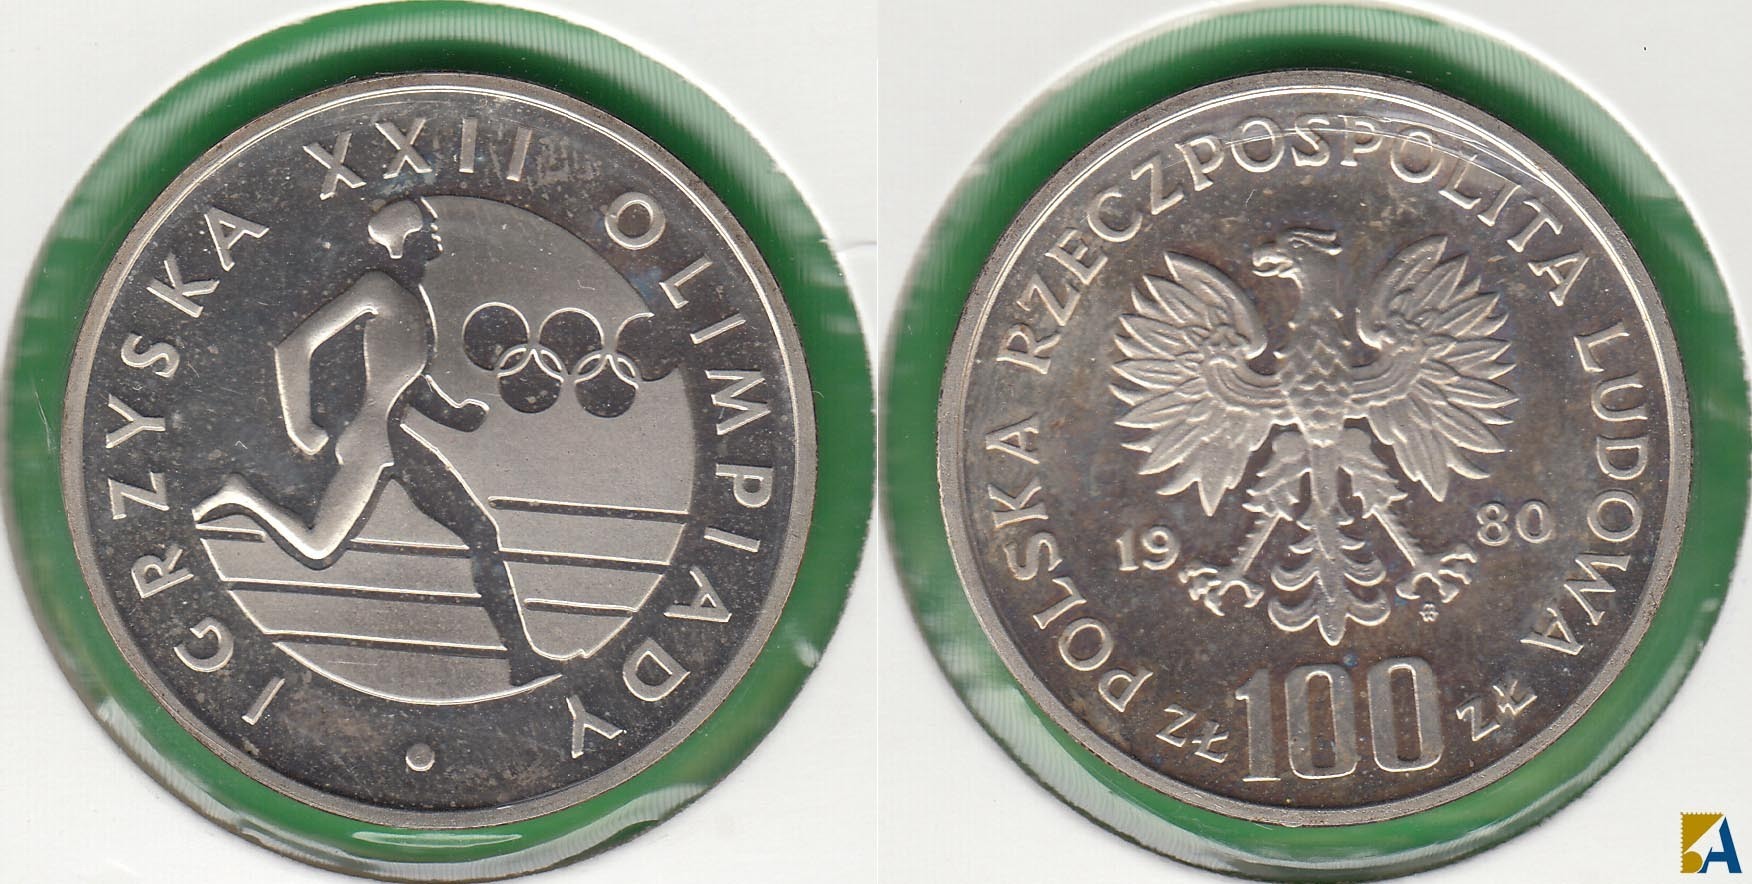 POLONIA - POLSKA. 100 ZLOTYCH DE 1980. PLATA 0.625.